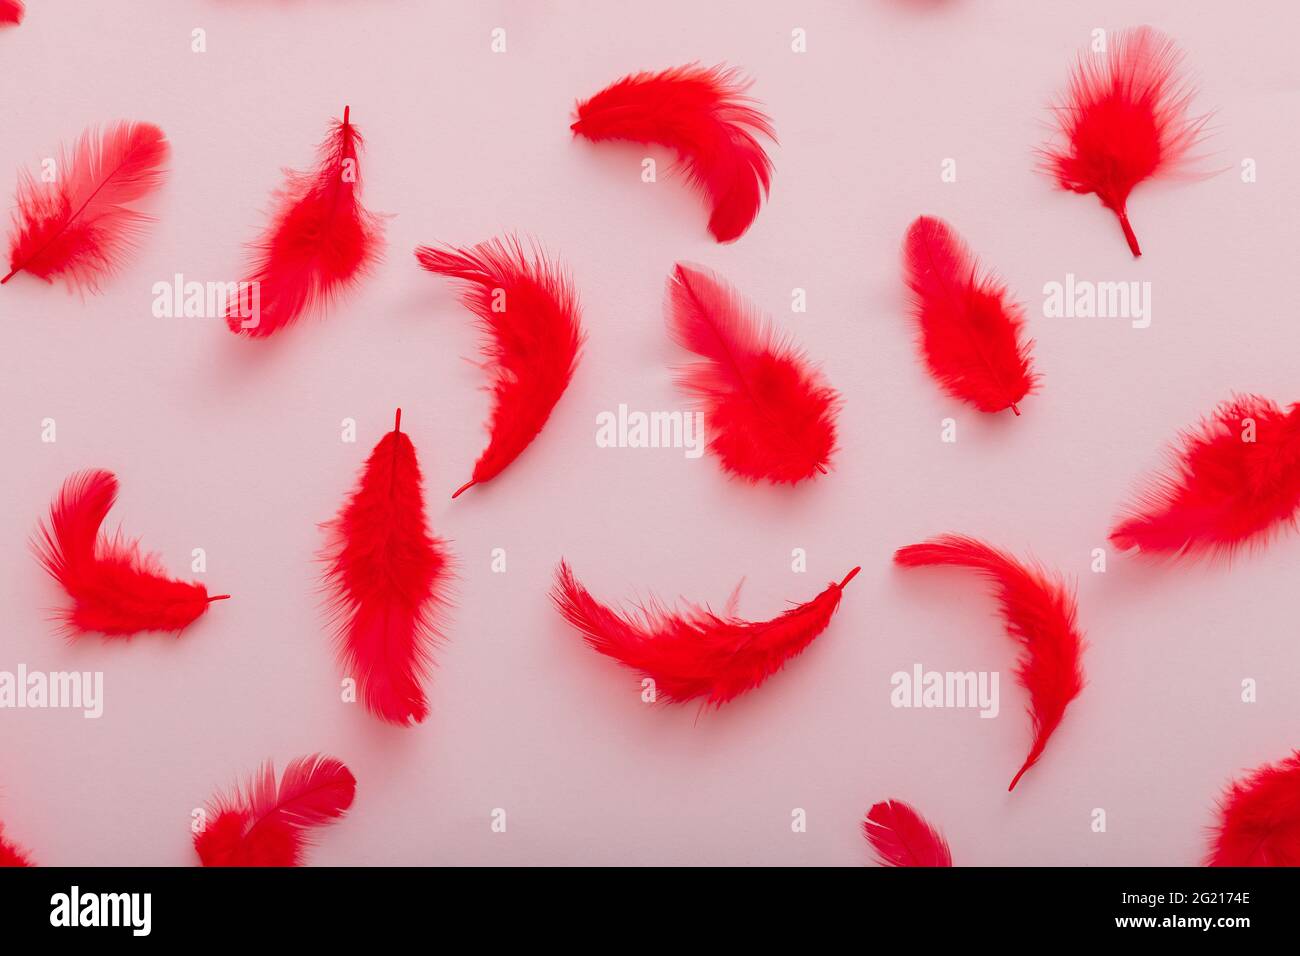 Rotes Federmuster auf rosa Hintergrund. Draufsicht weiche Vogelfedern Musterstruktur. Stockfoto